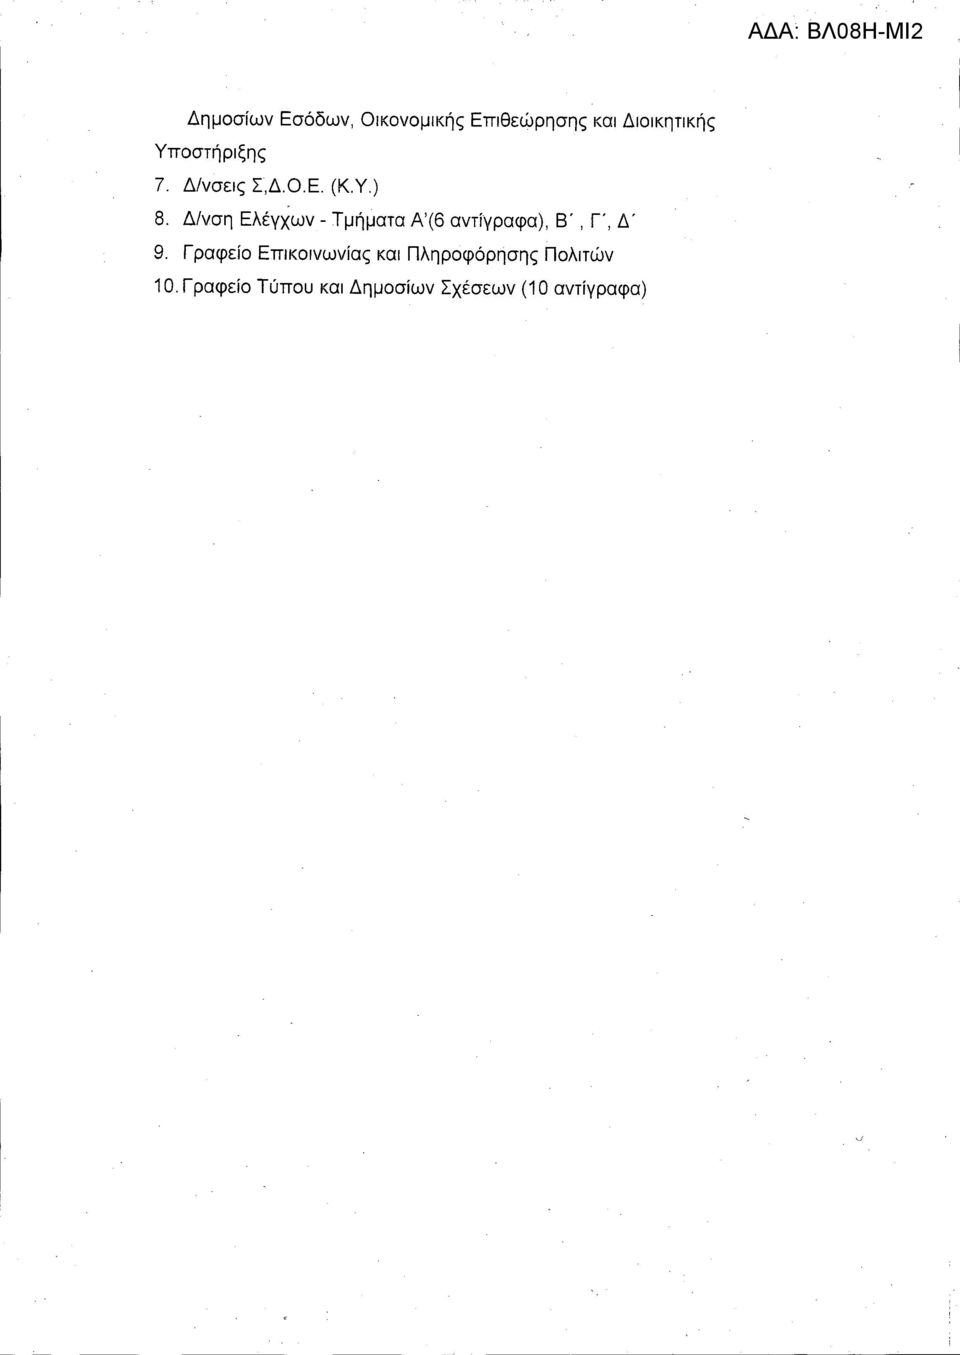 Δ/νση Ελέγχων - Τμήματα Α'(6 αντίγραφα), Β', Γ, Δ' 9.